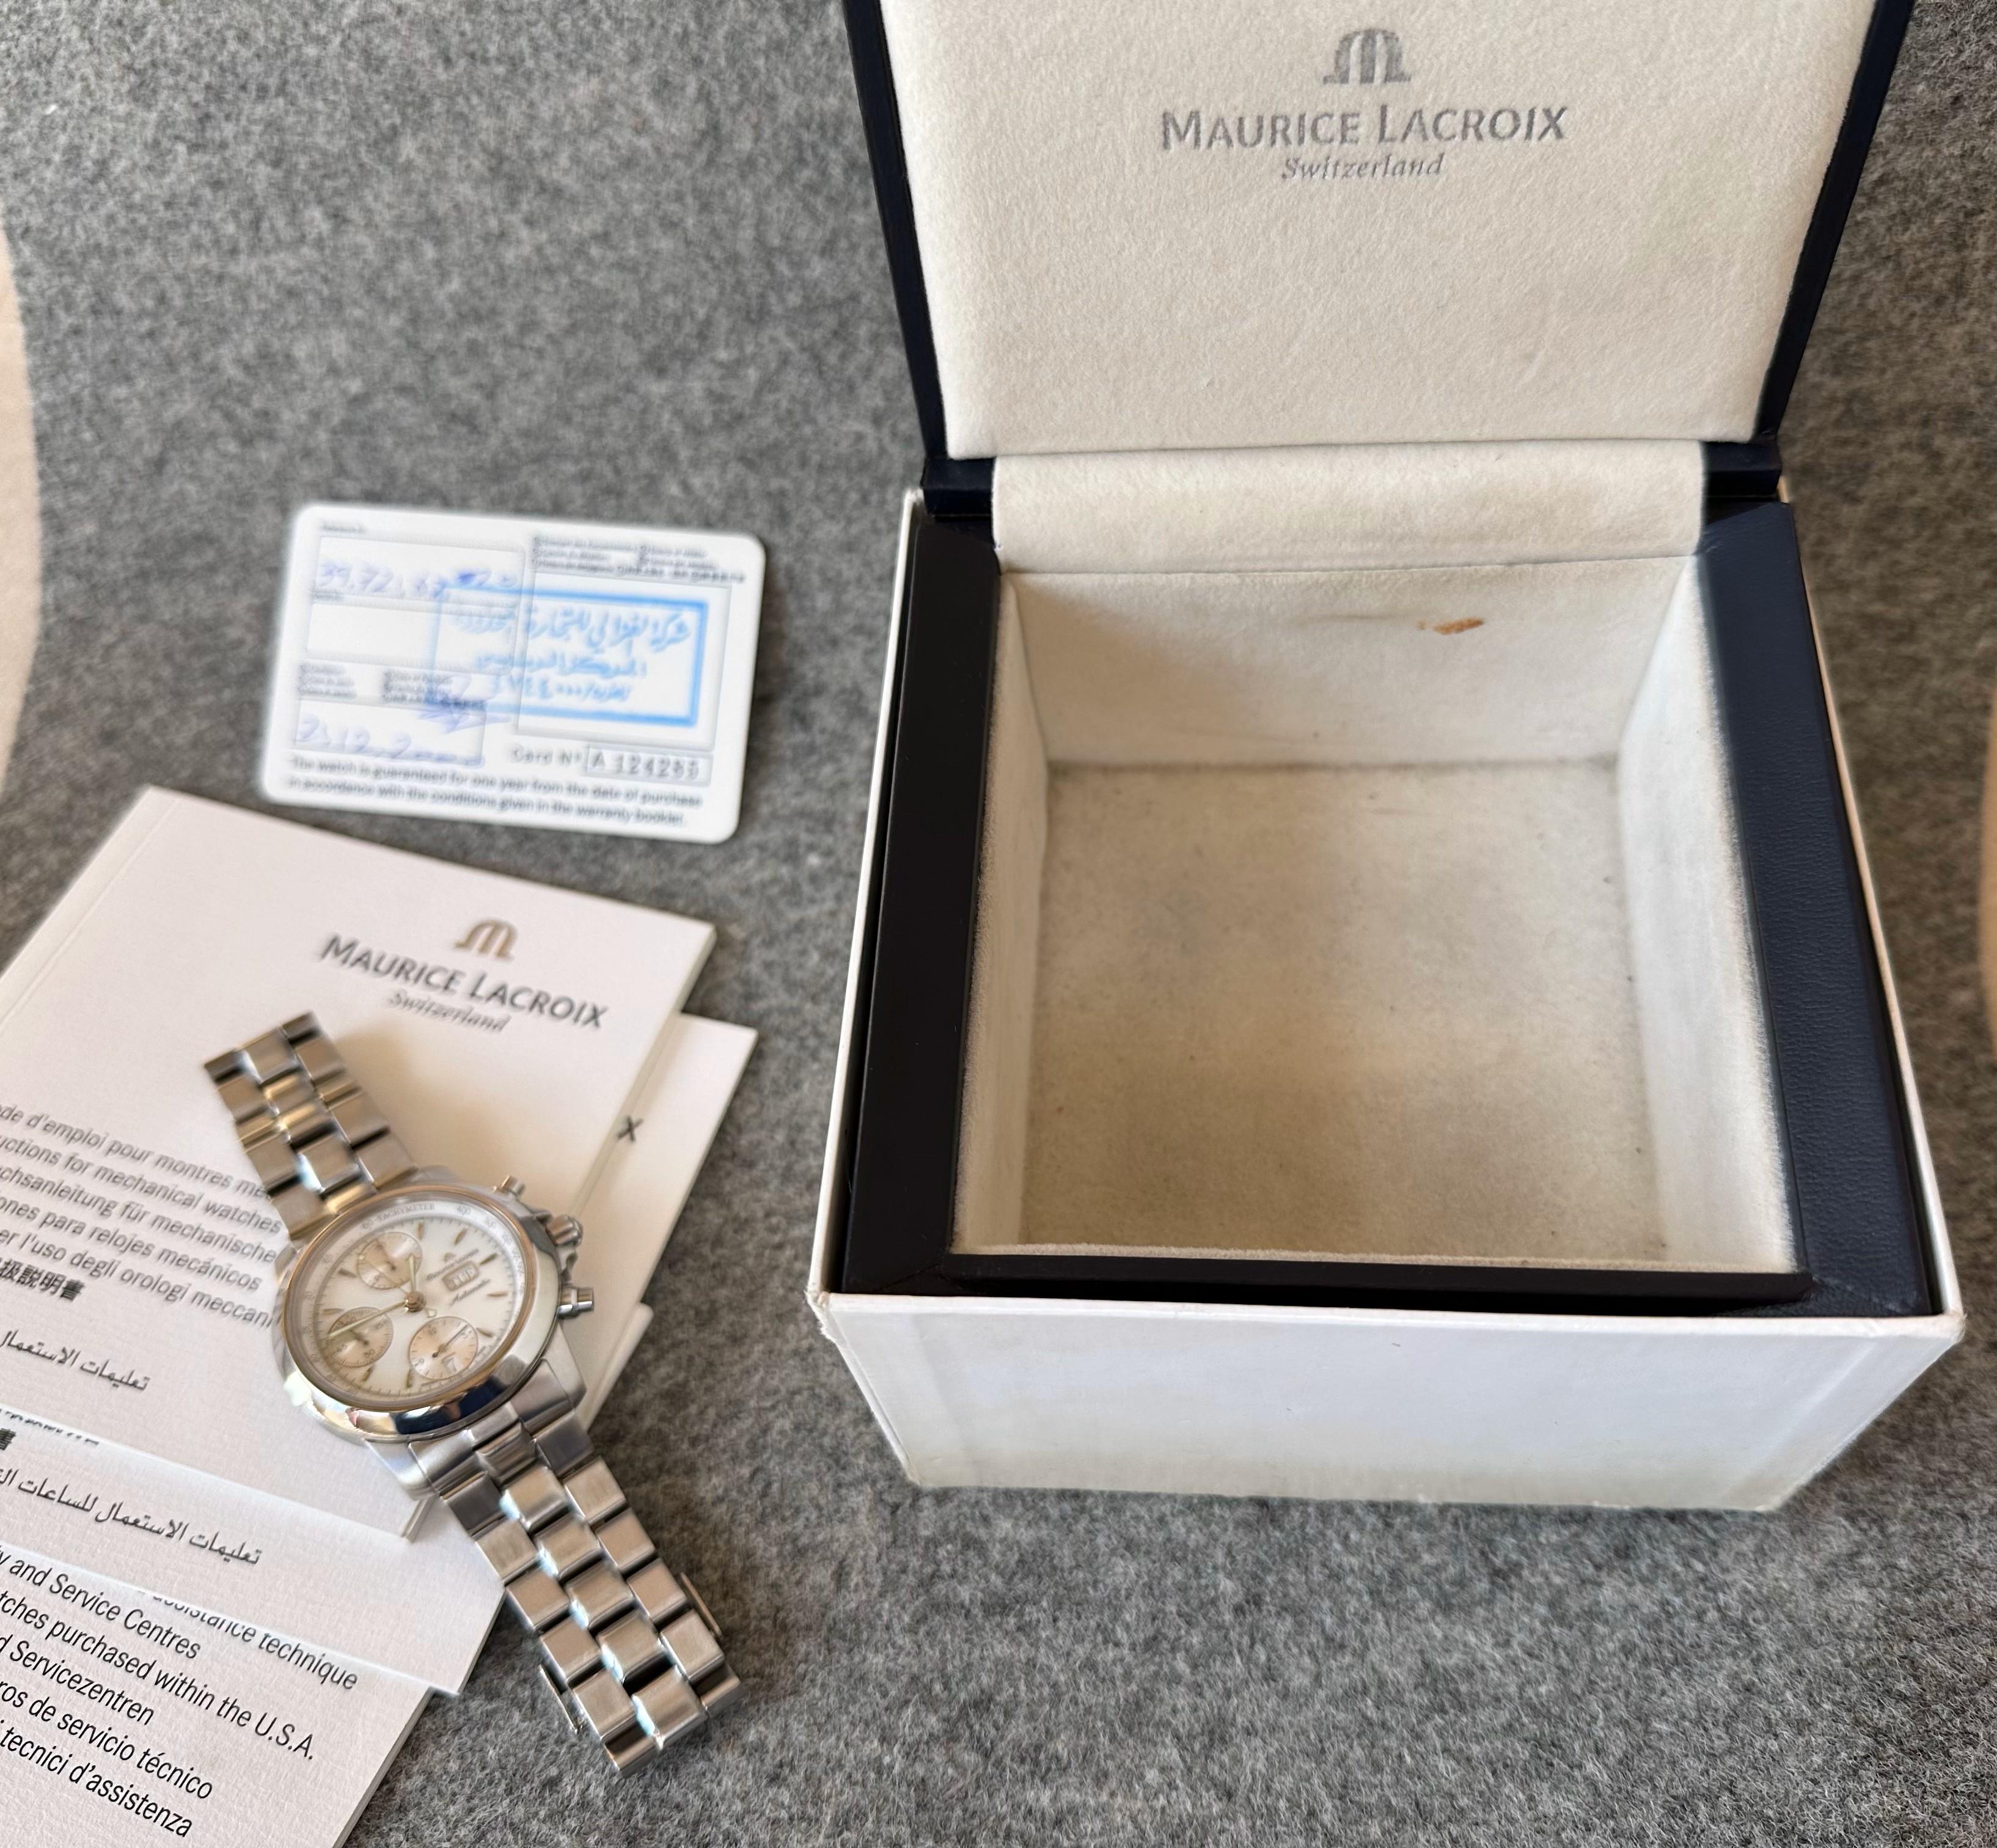 Maurice Lacroix Les Classiques Chronographe Automatic Chronograph 39721 Full Set For Sale 9